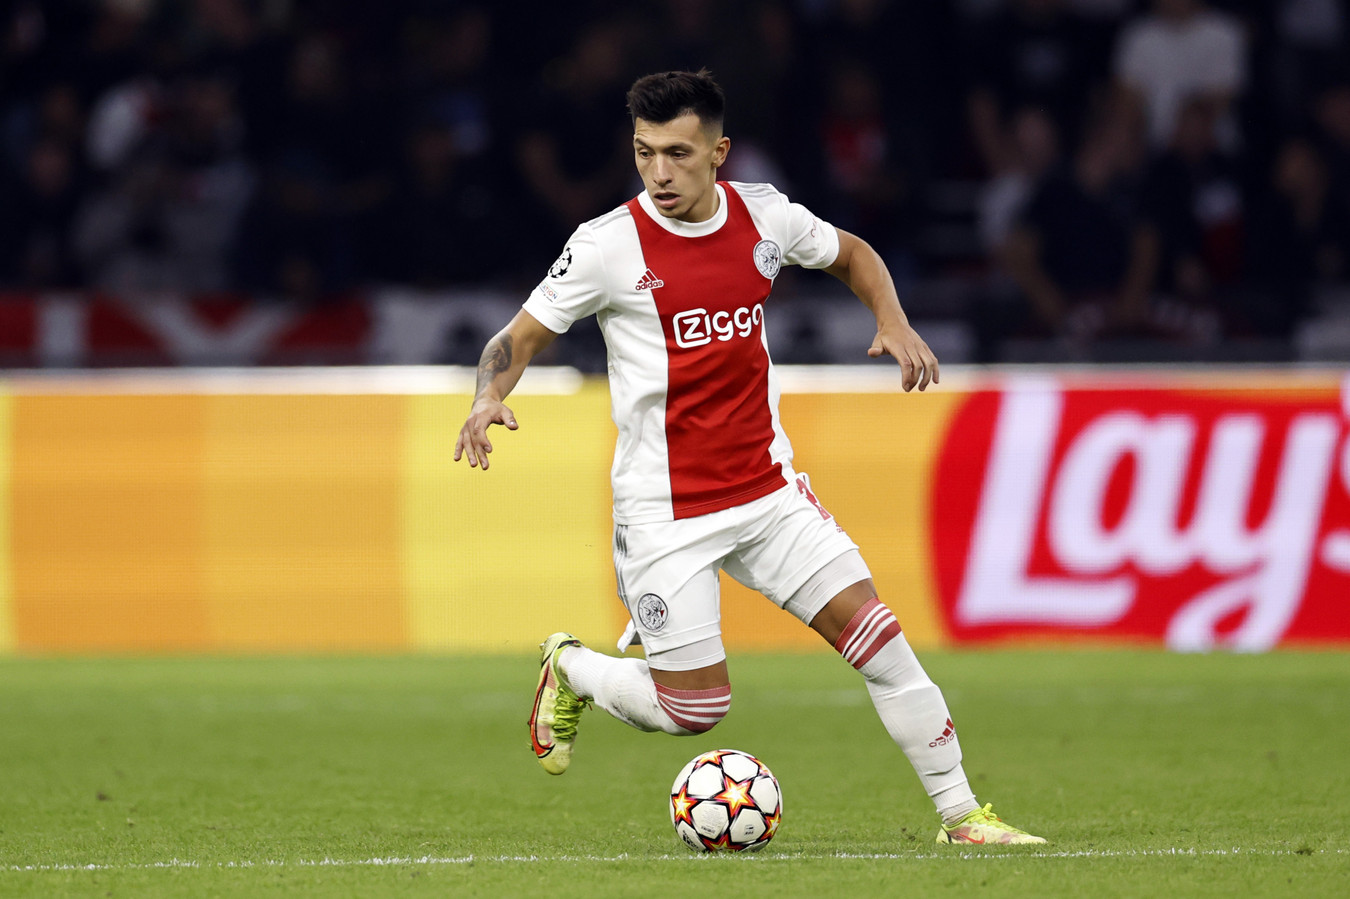 Lisandro Martínez verlengt contract bij Ajax tot 2025: ‘Ik ben hier